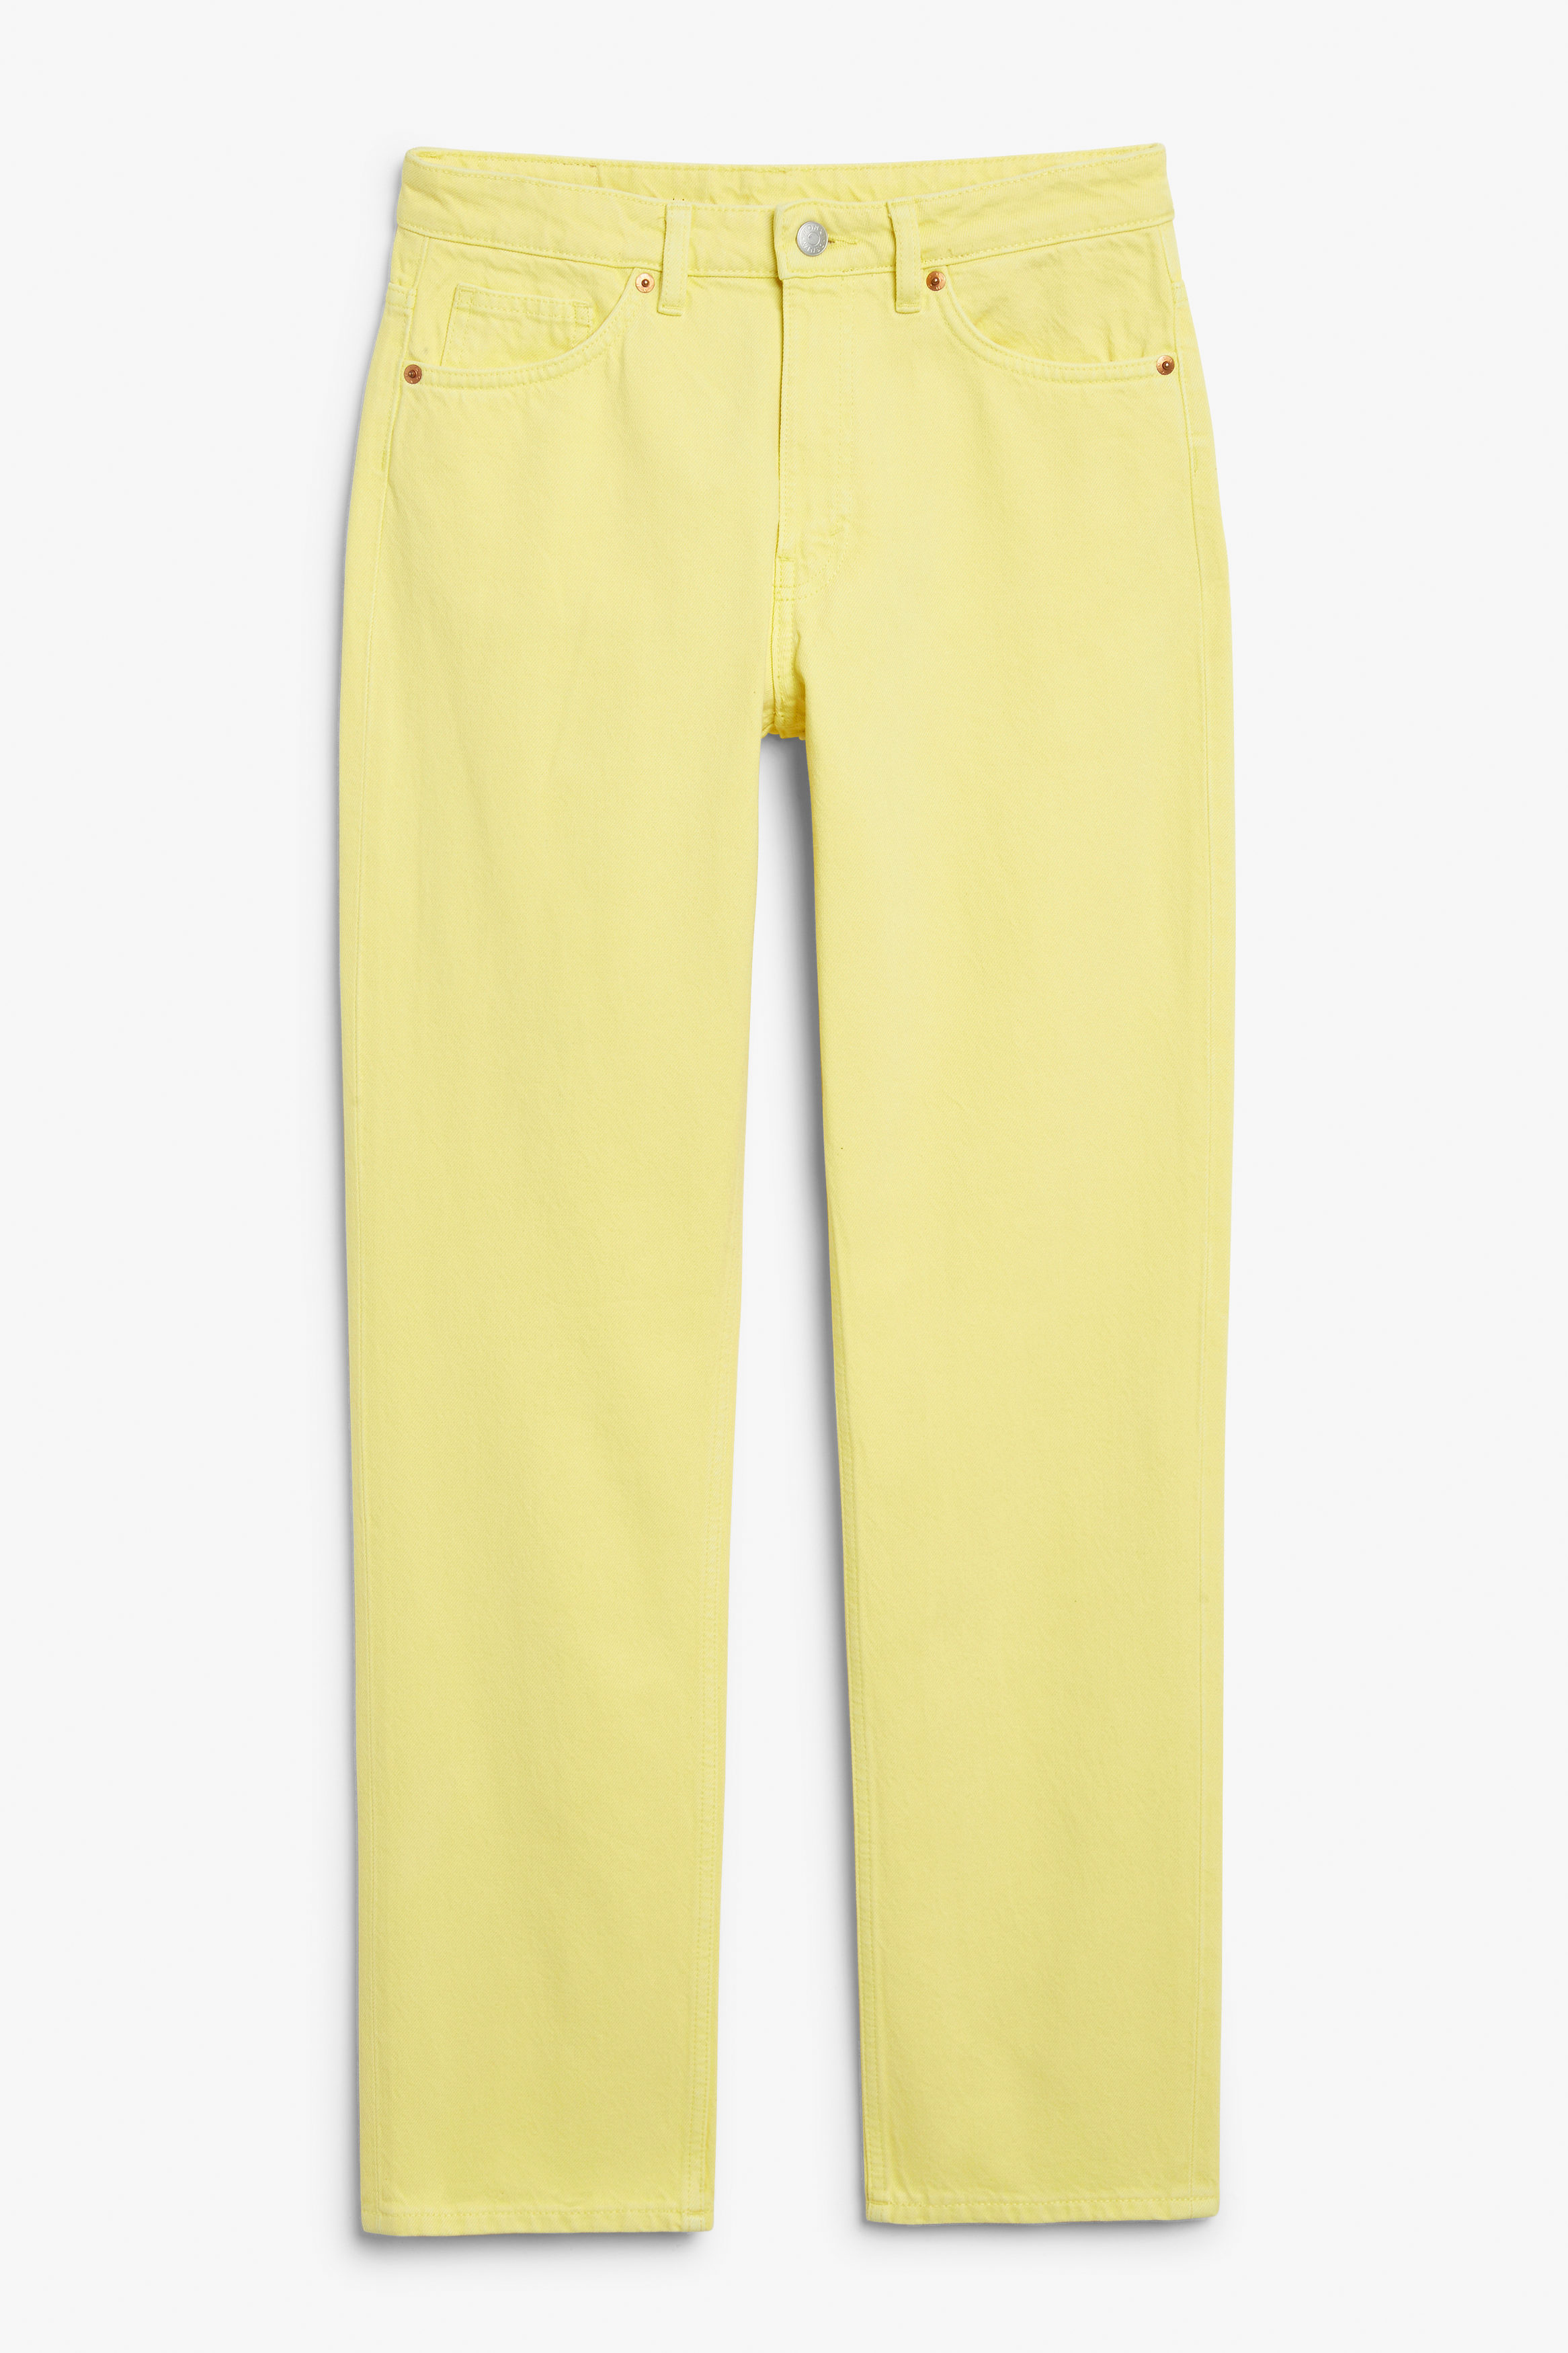 Billede af Monki Yara Mid Waist Jeans Gul Citrongul, Straight jeans. Farve: Lemon yellow I størrelse 24/32